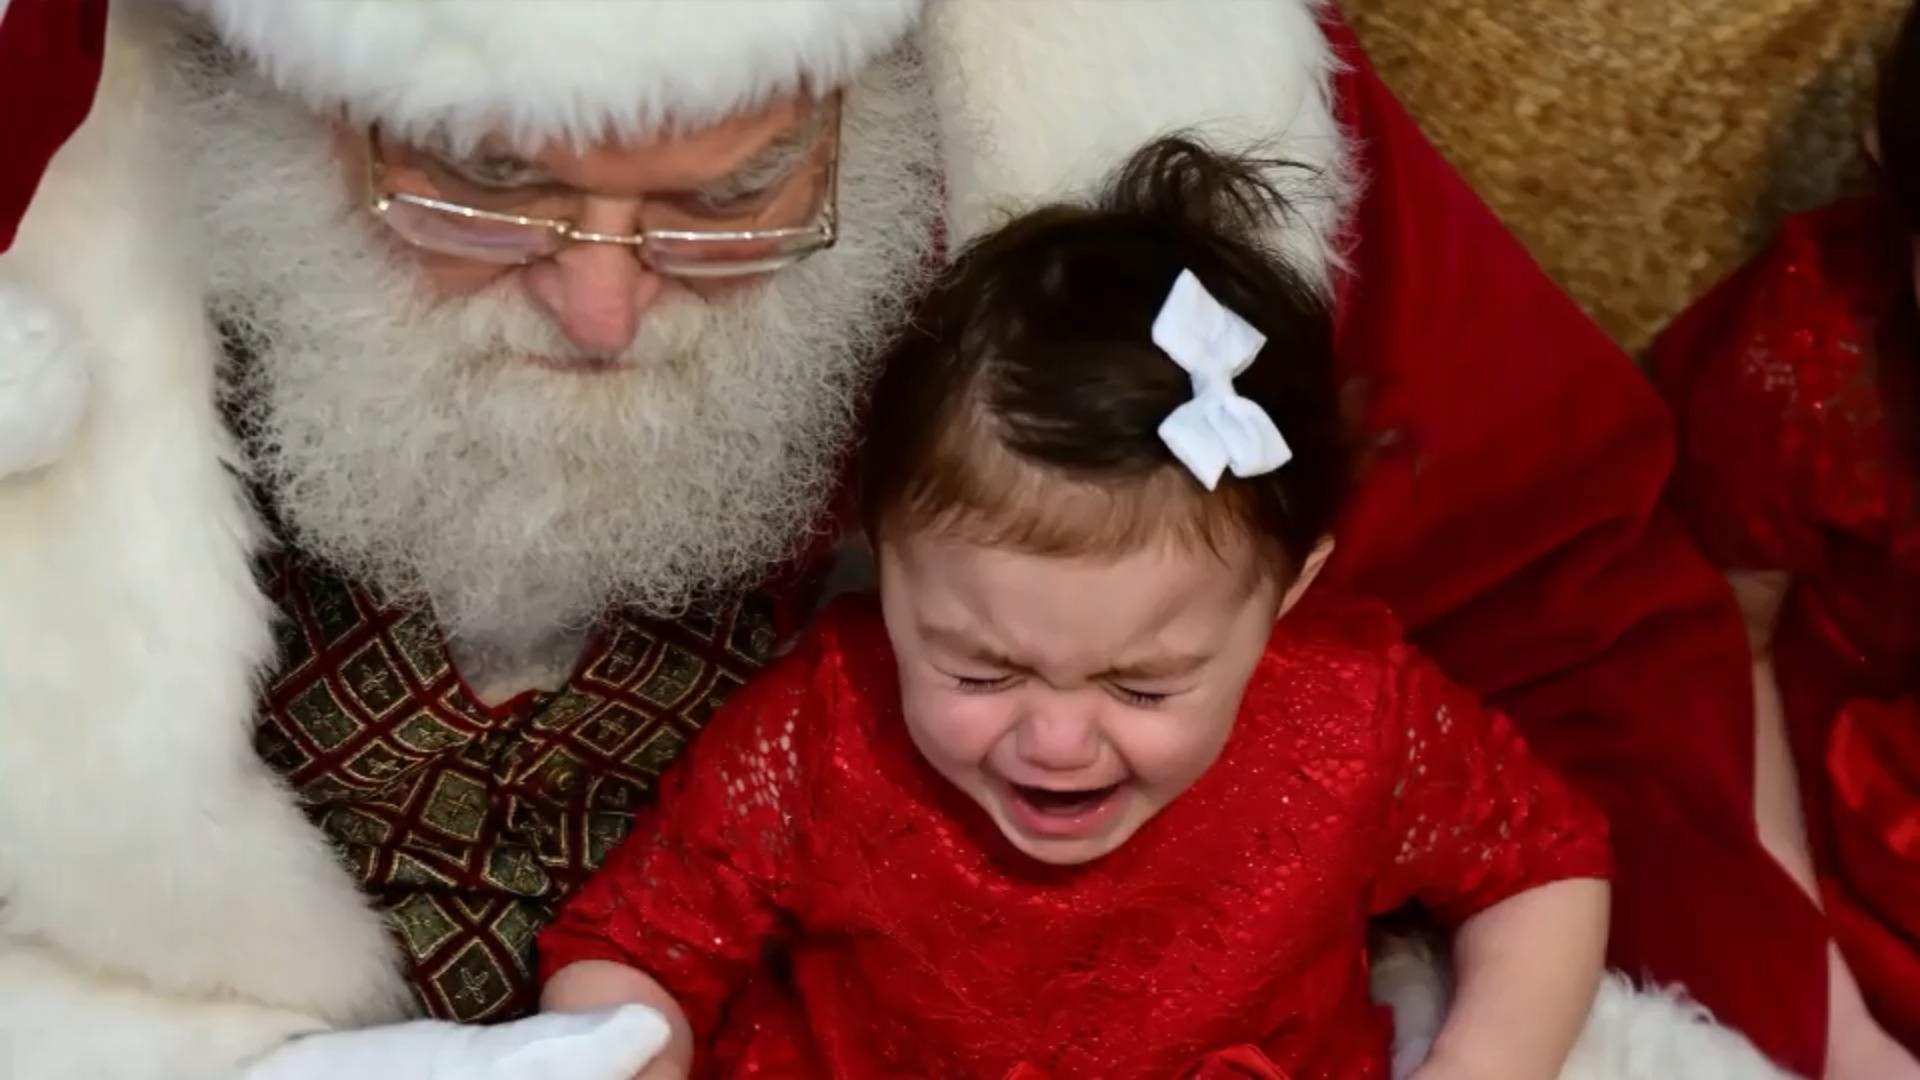 Woran Menschen in der Weihnachtszeit leiden Angst vor dem Weihnachtsmann?